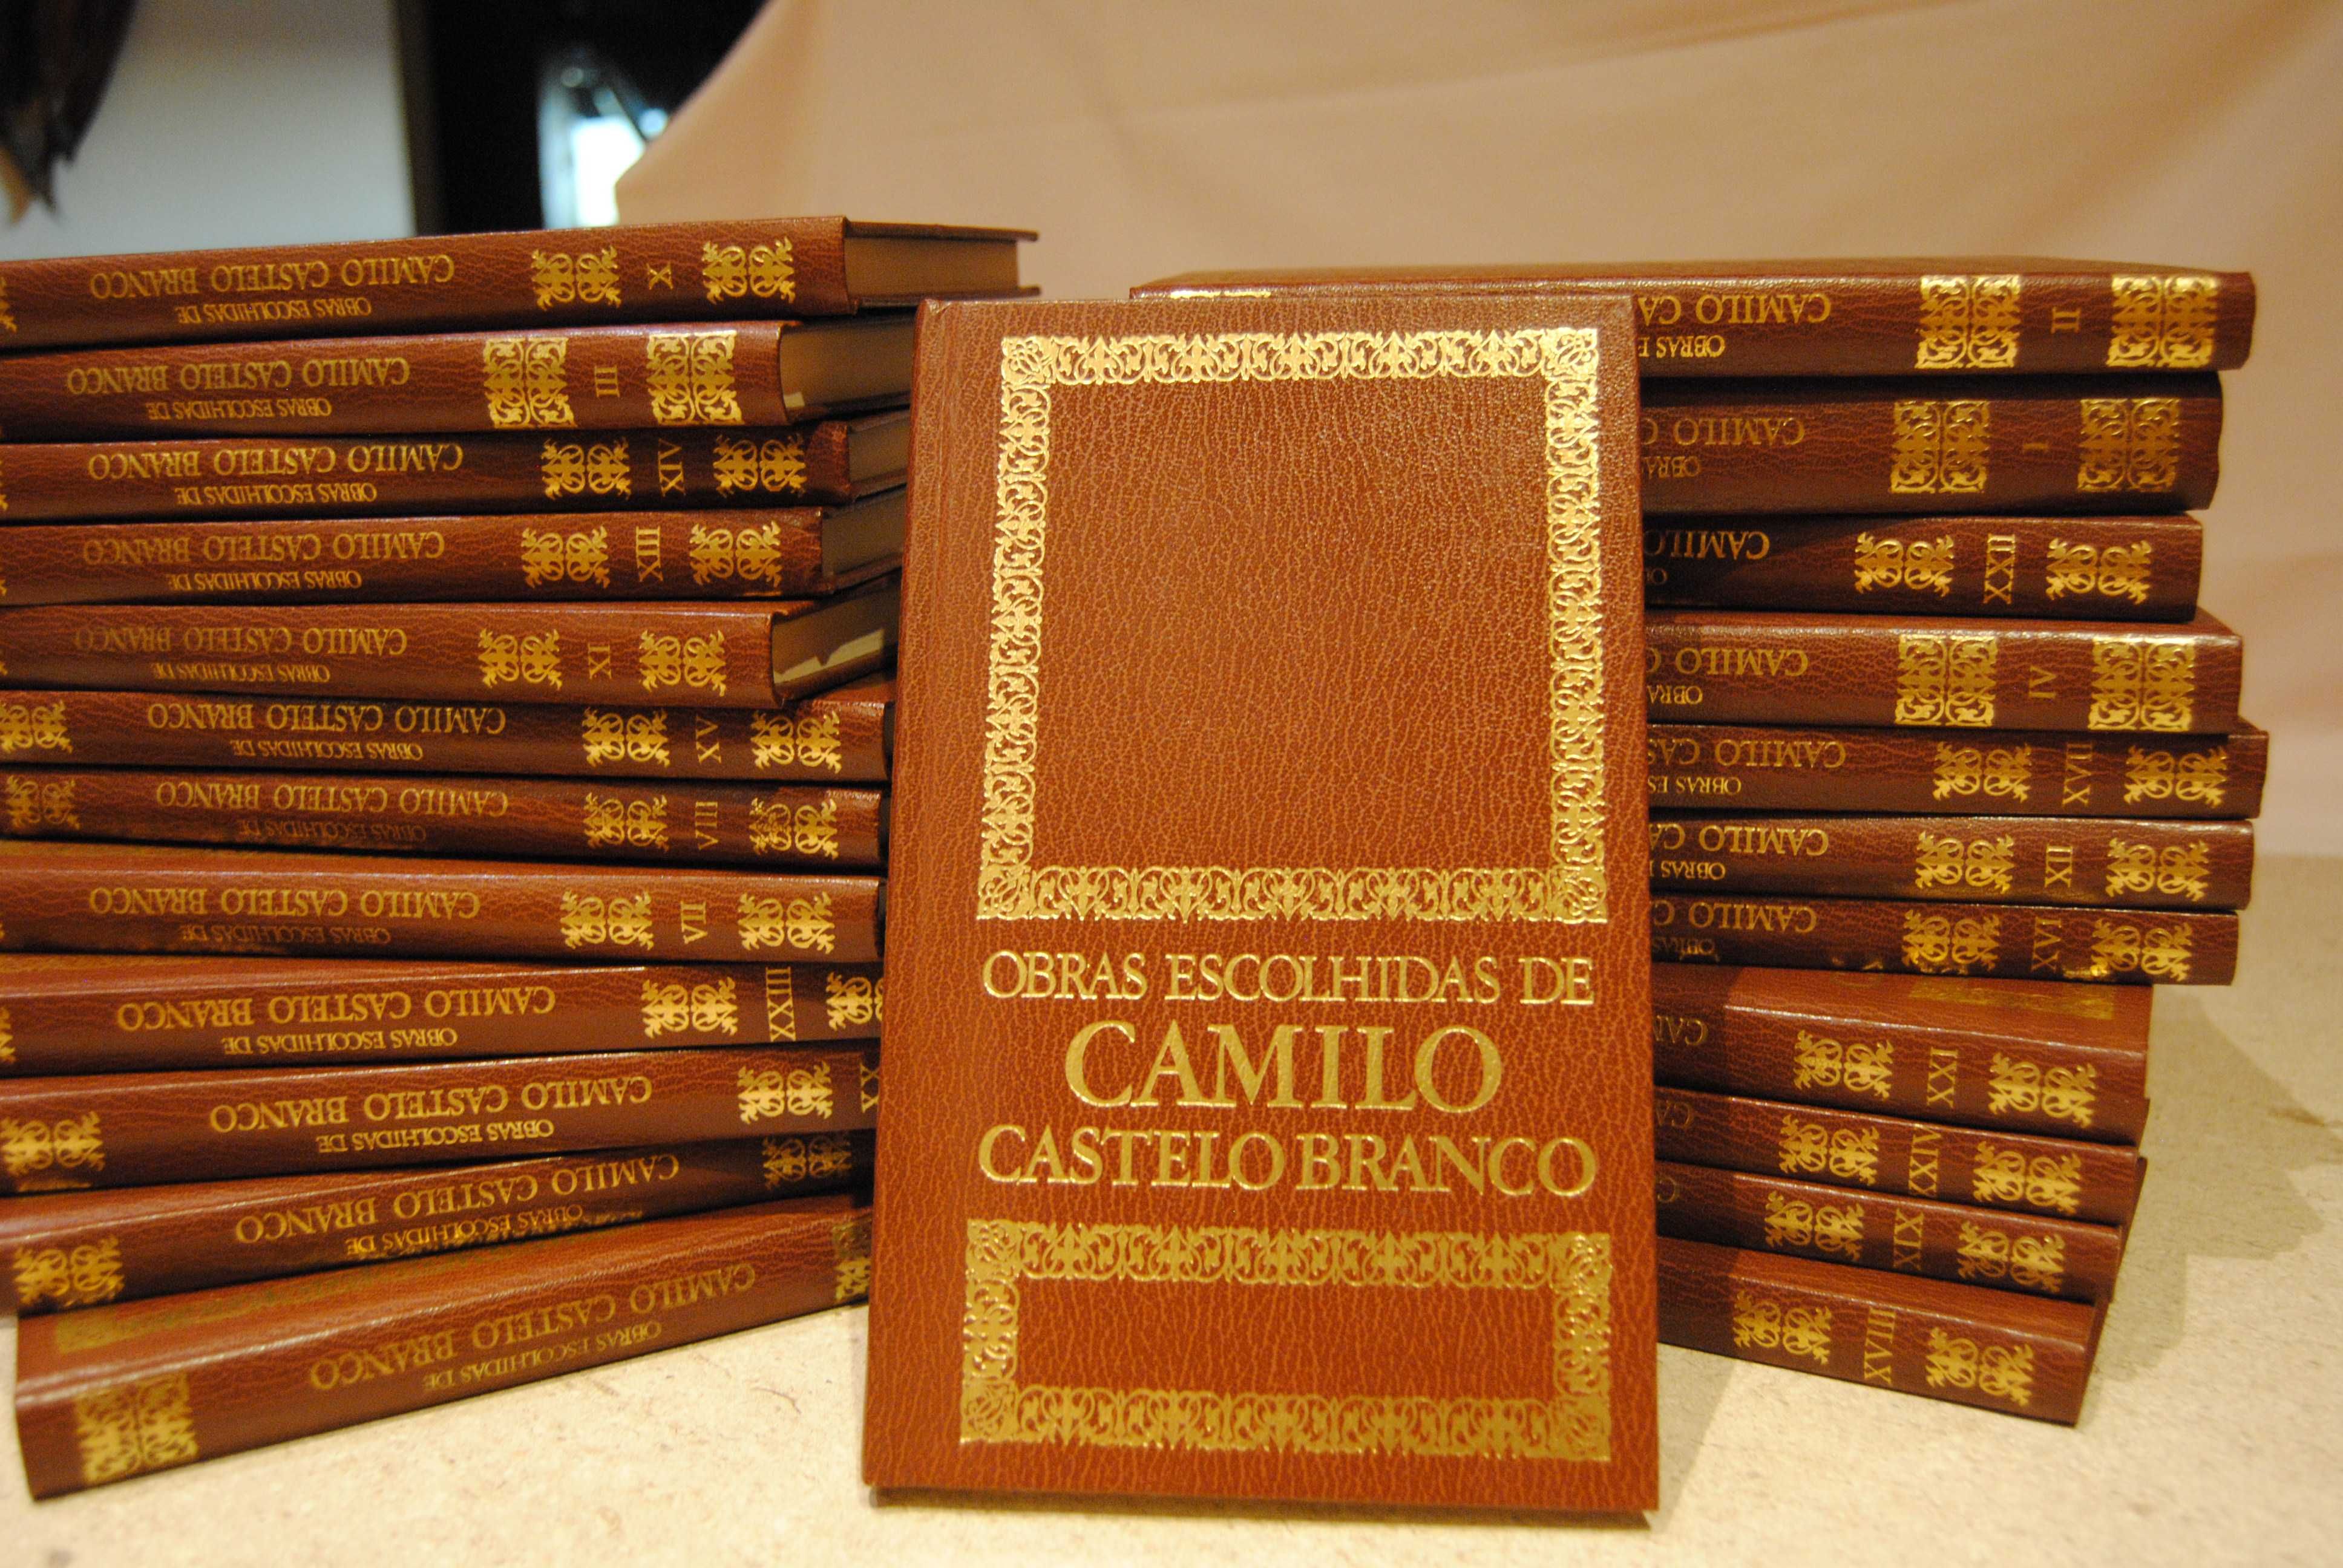 Obras escolhidas de CAMILO CASTELO BANCO